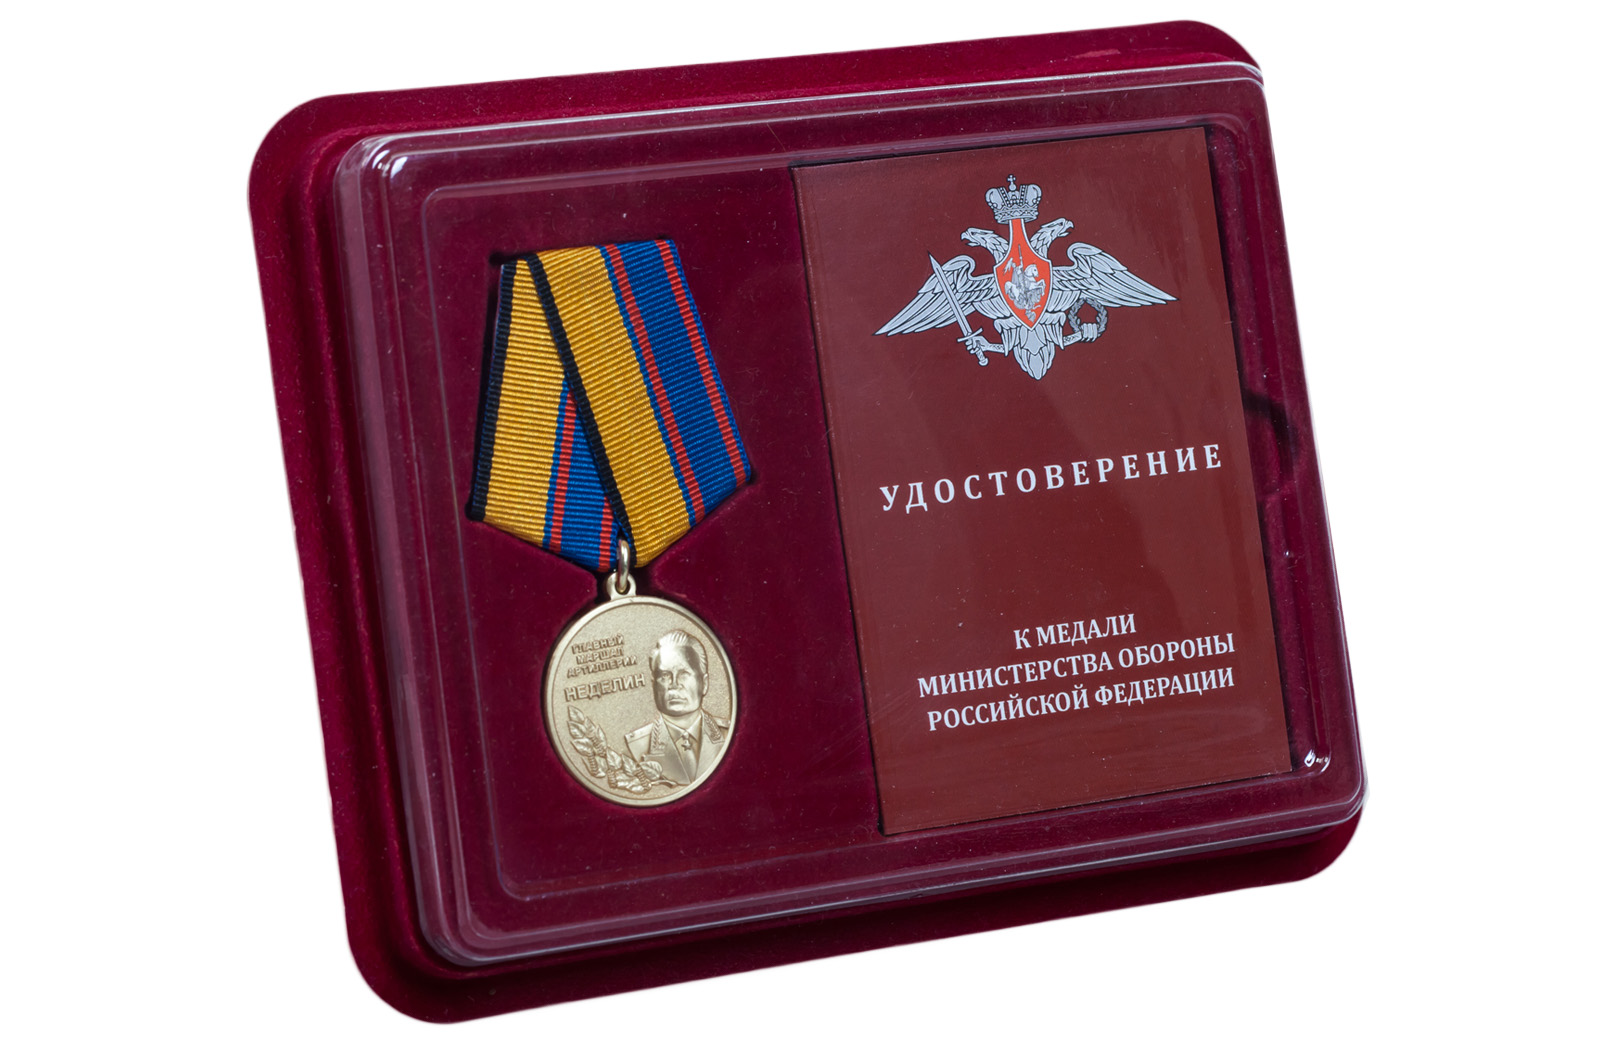 Купить медаль Главный маршал артиллерии Неделин в подарок онлайн